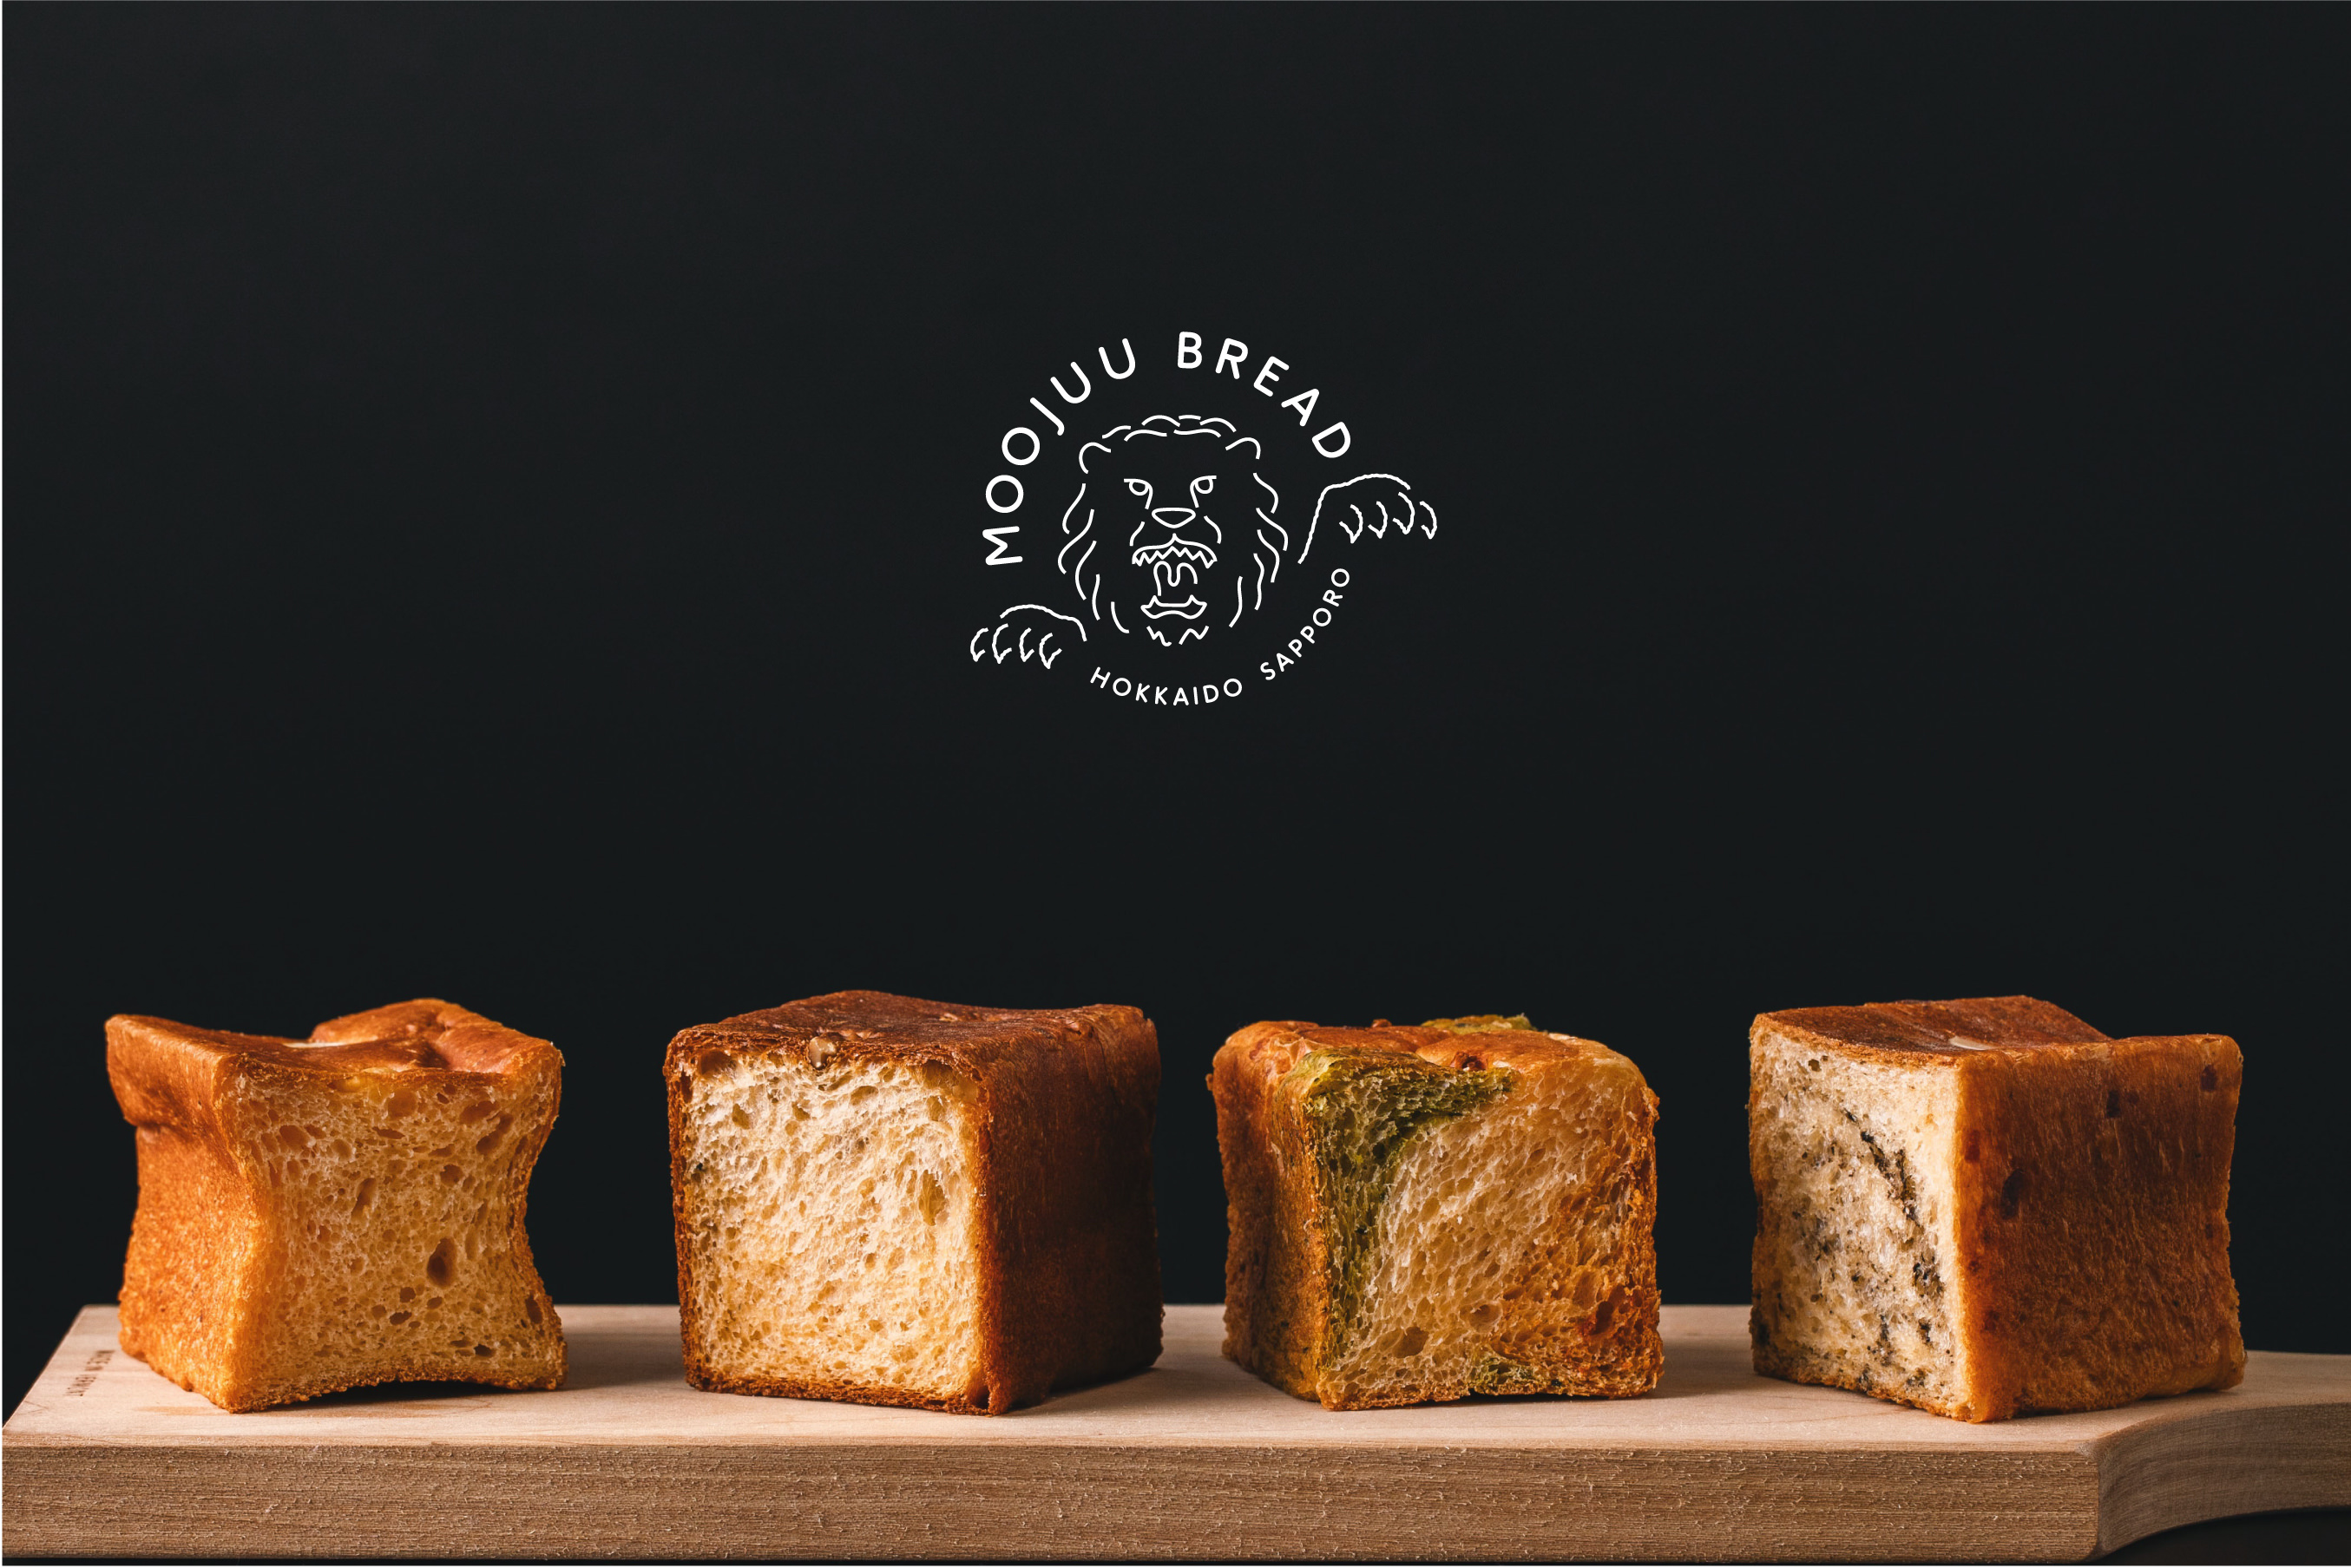 いろんなチーズの表情を楽しめる今までにない食パン　
「MOOJUU BREAD(モージューブレッド)」
2020年8月10日(月)より予約受付スタート！